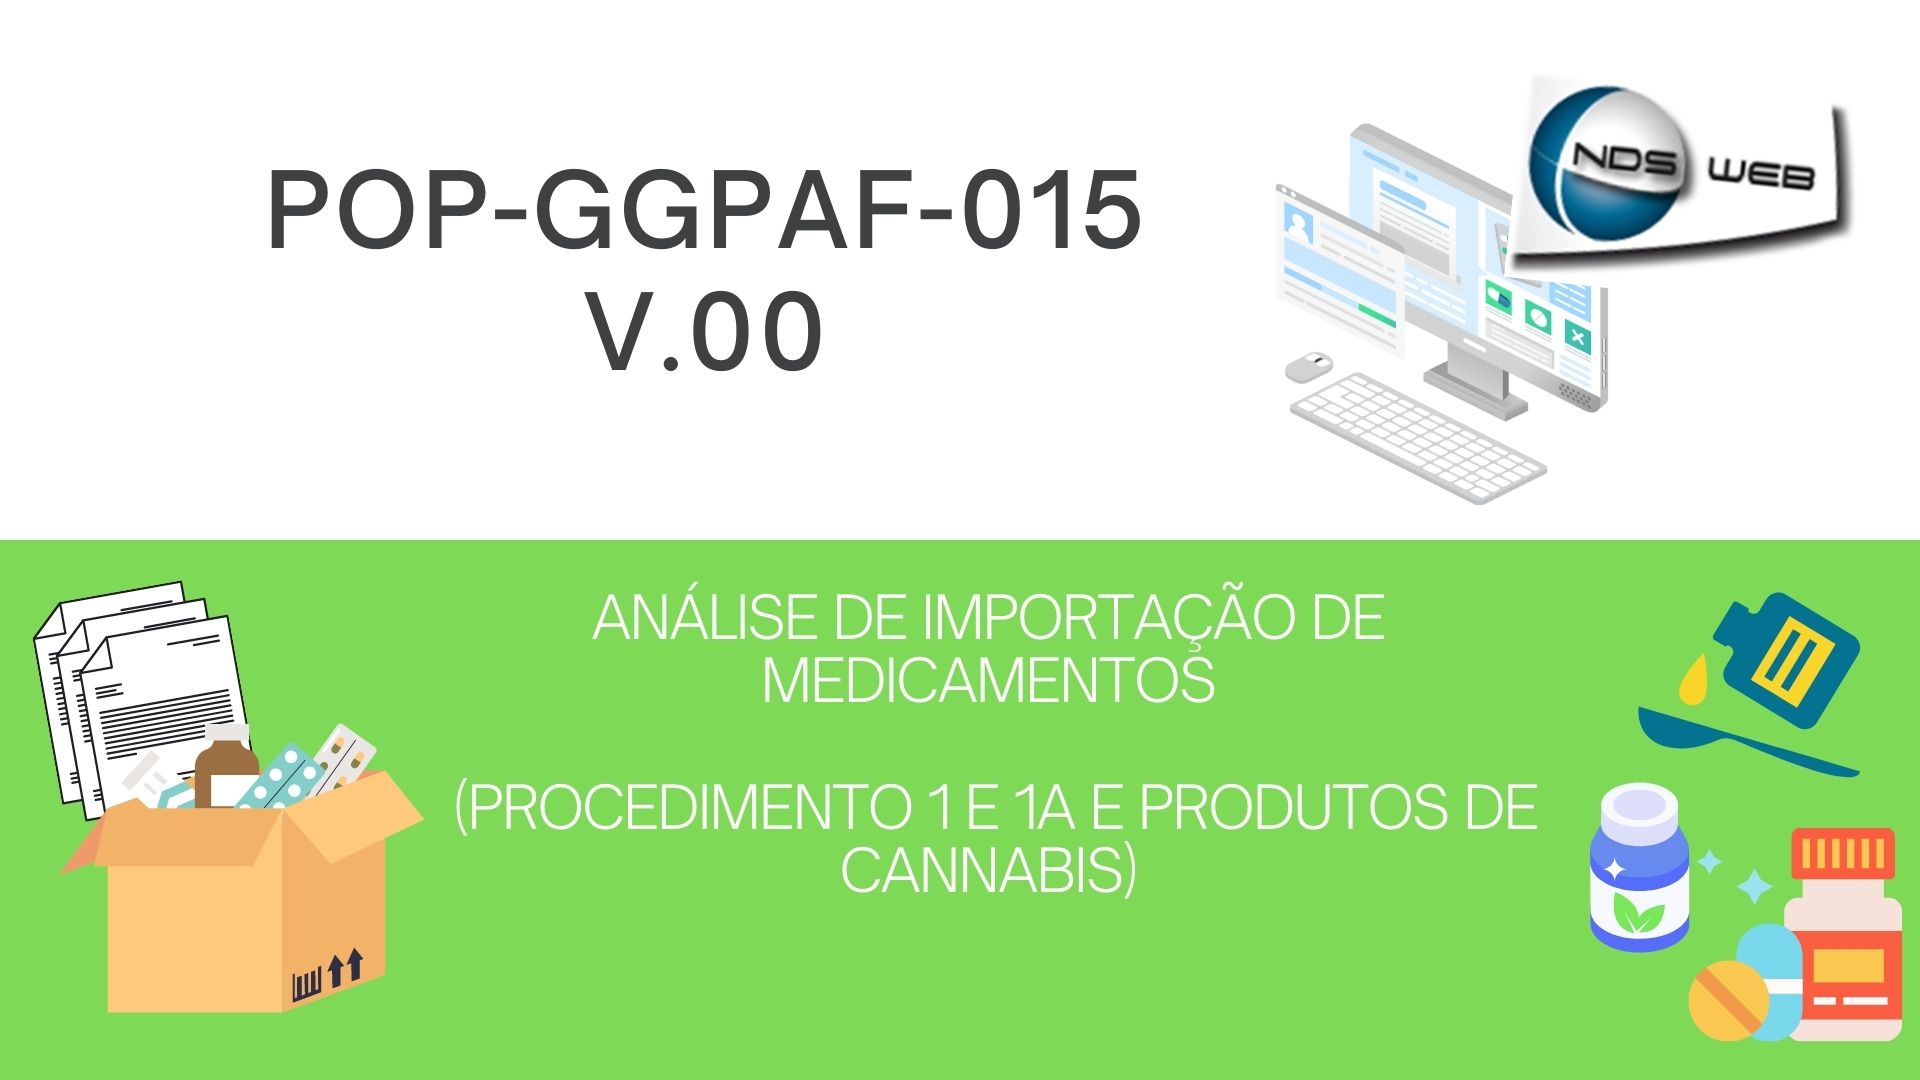 POP-GGPAF-015 - ANÁLISE DE IMPORTAÇÃO DE MEDICAMENTOS (PROCEDIMENTO 1 E 1A E PRODUTOS DE CANNABIS), v.00